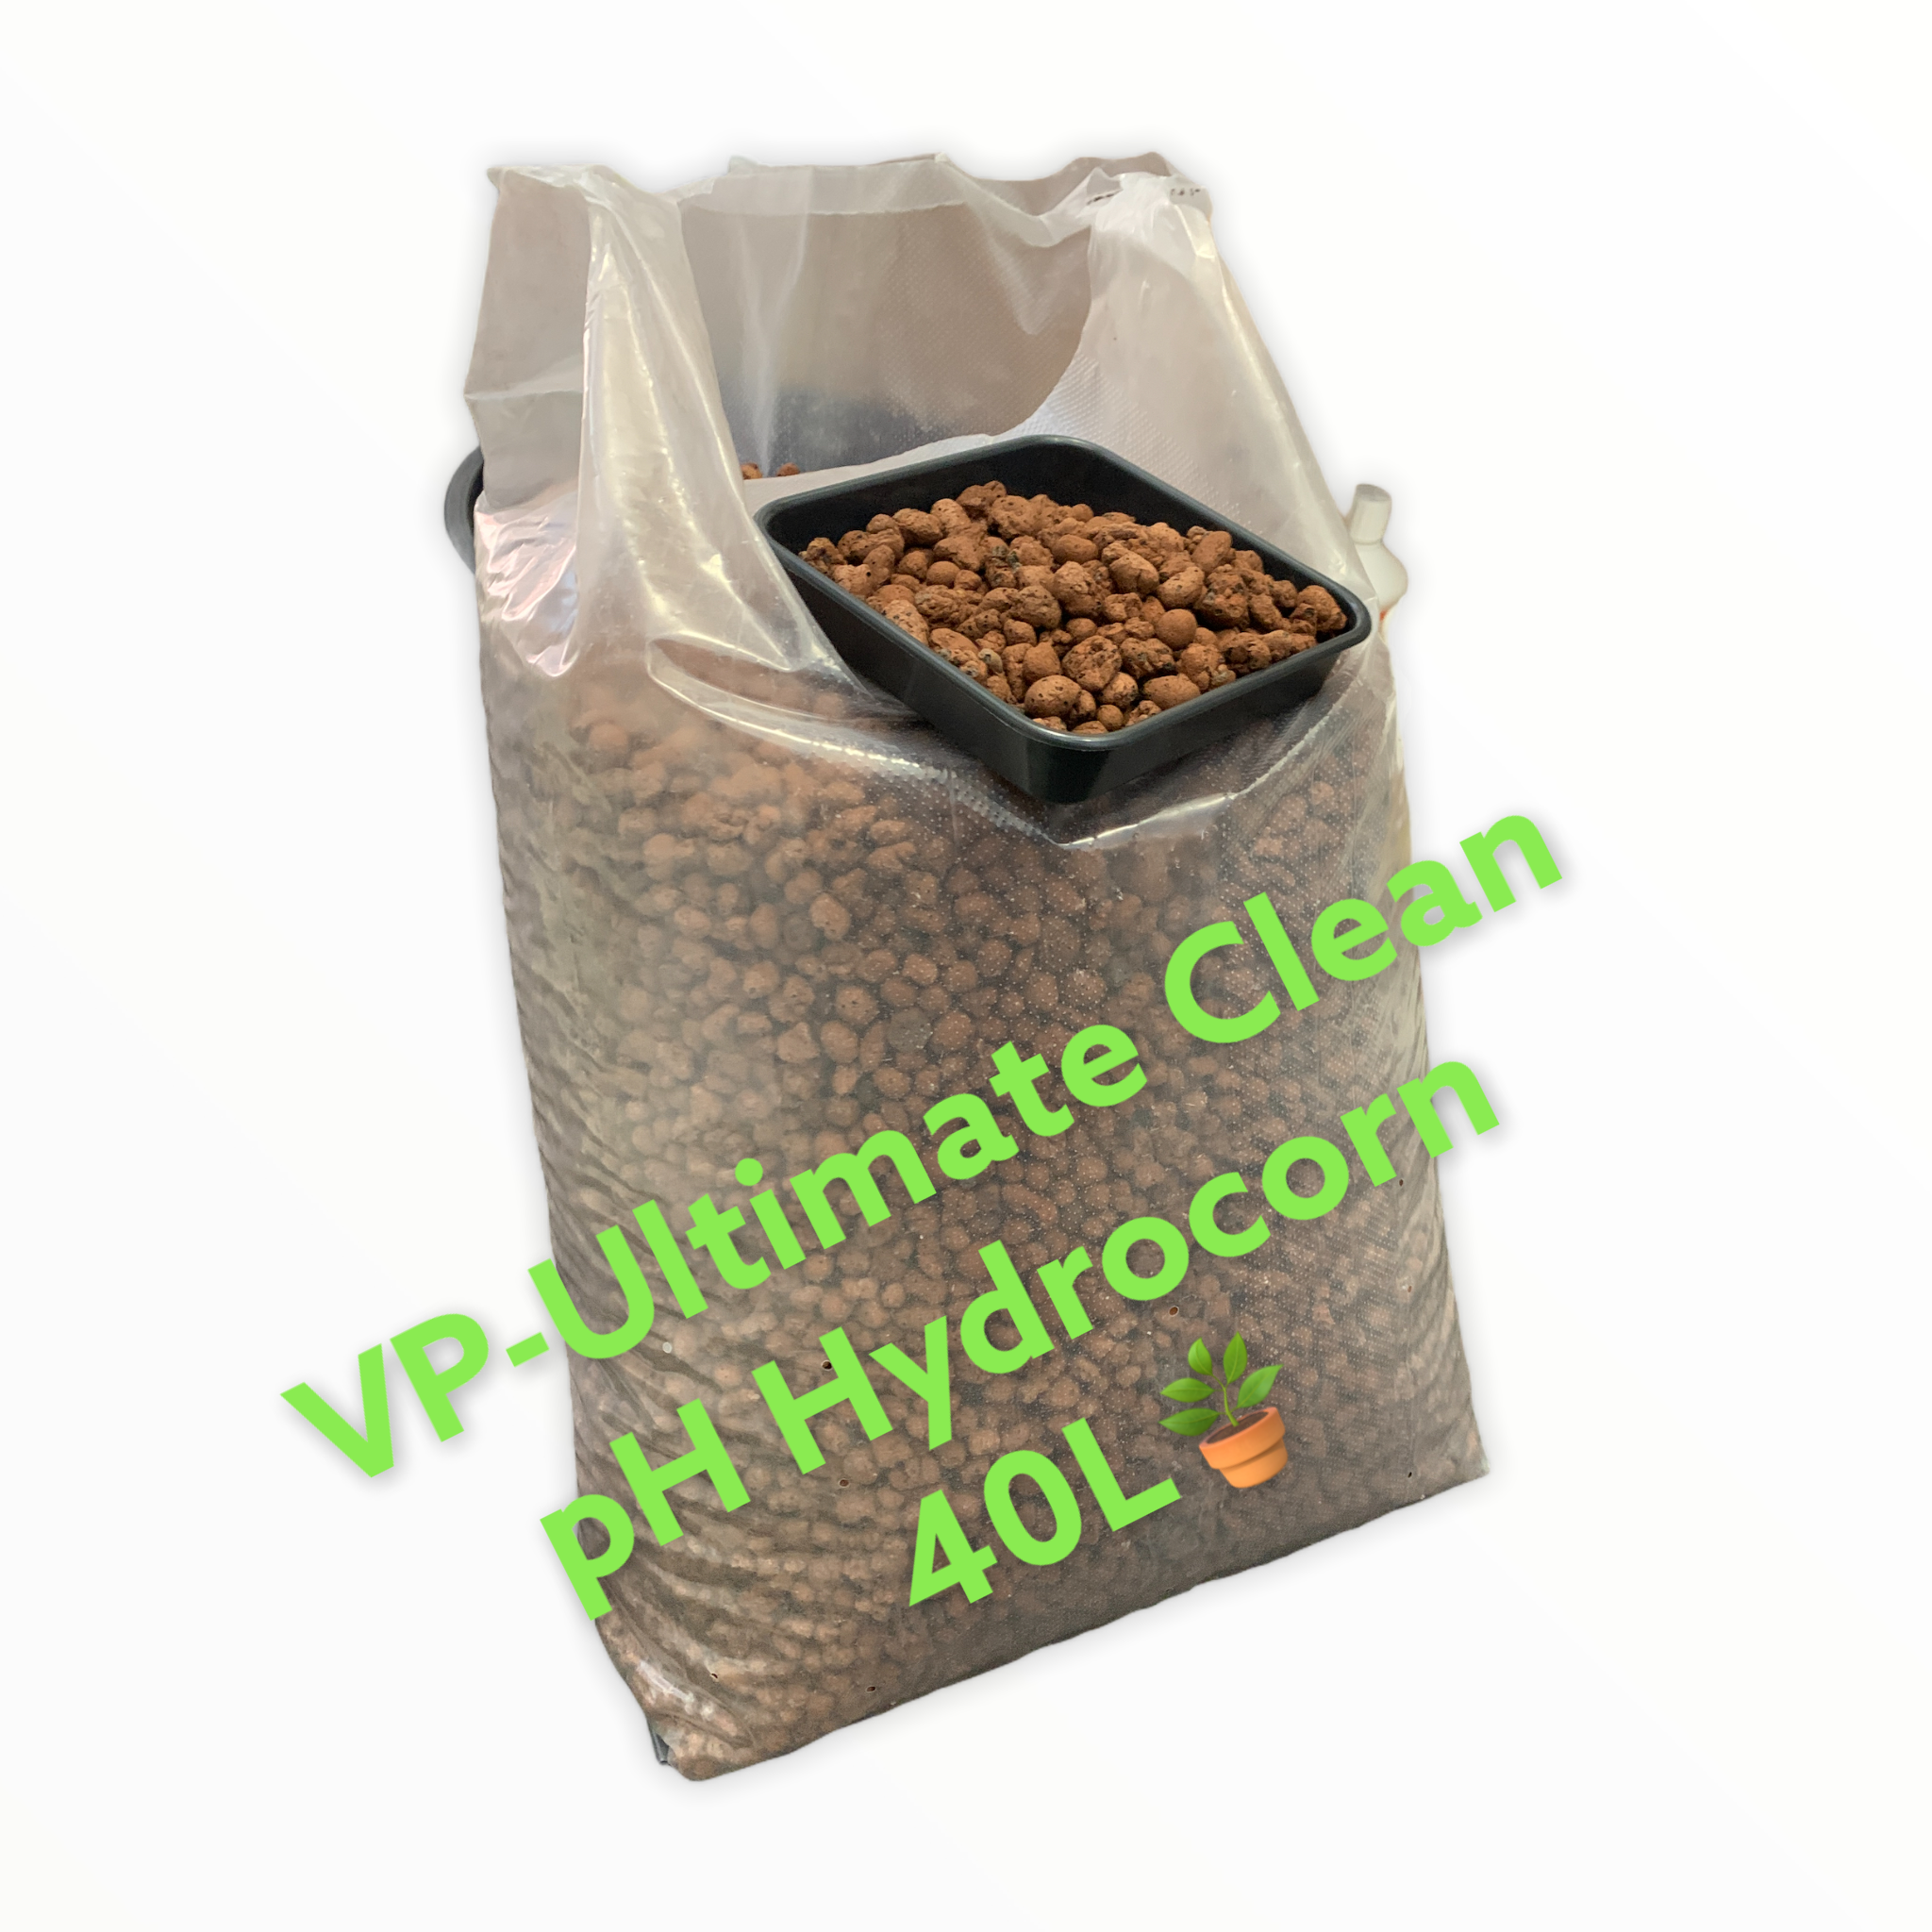 VP-Ultimate Clean pH hydrosora / Lecasora